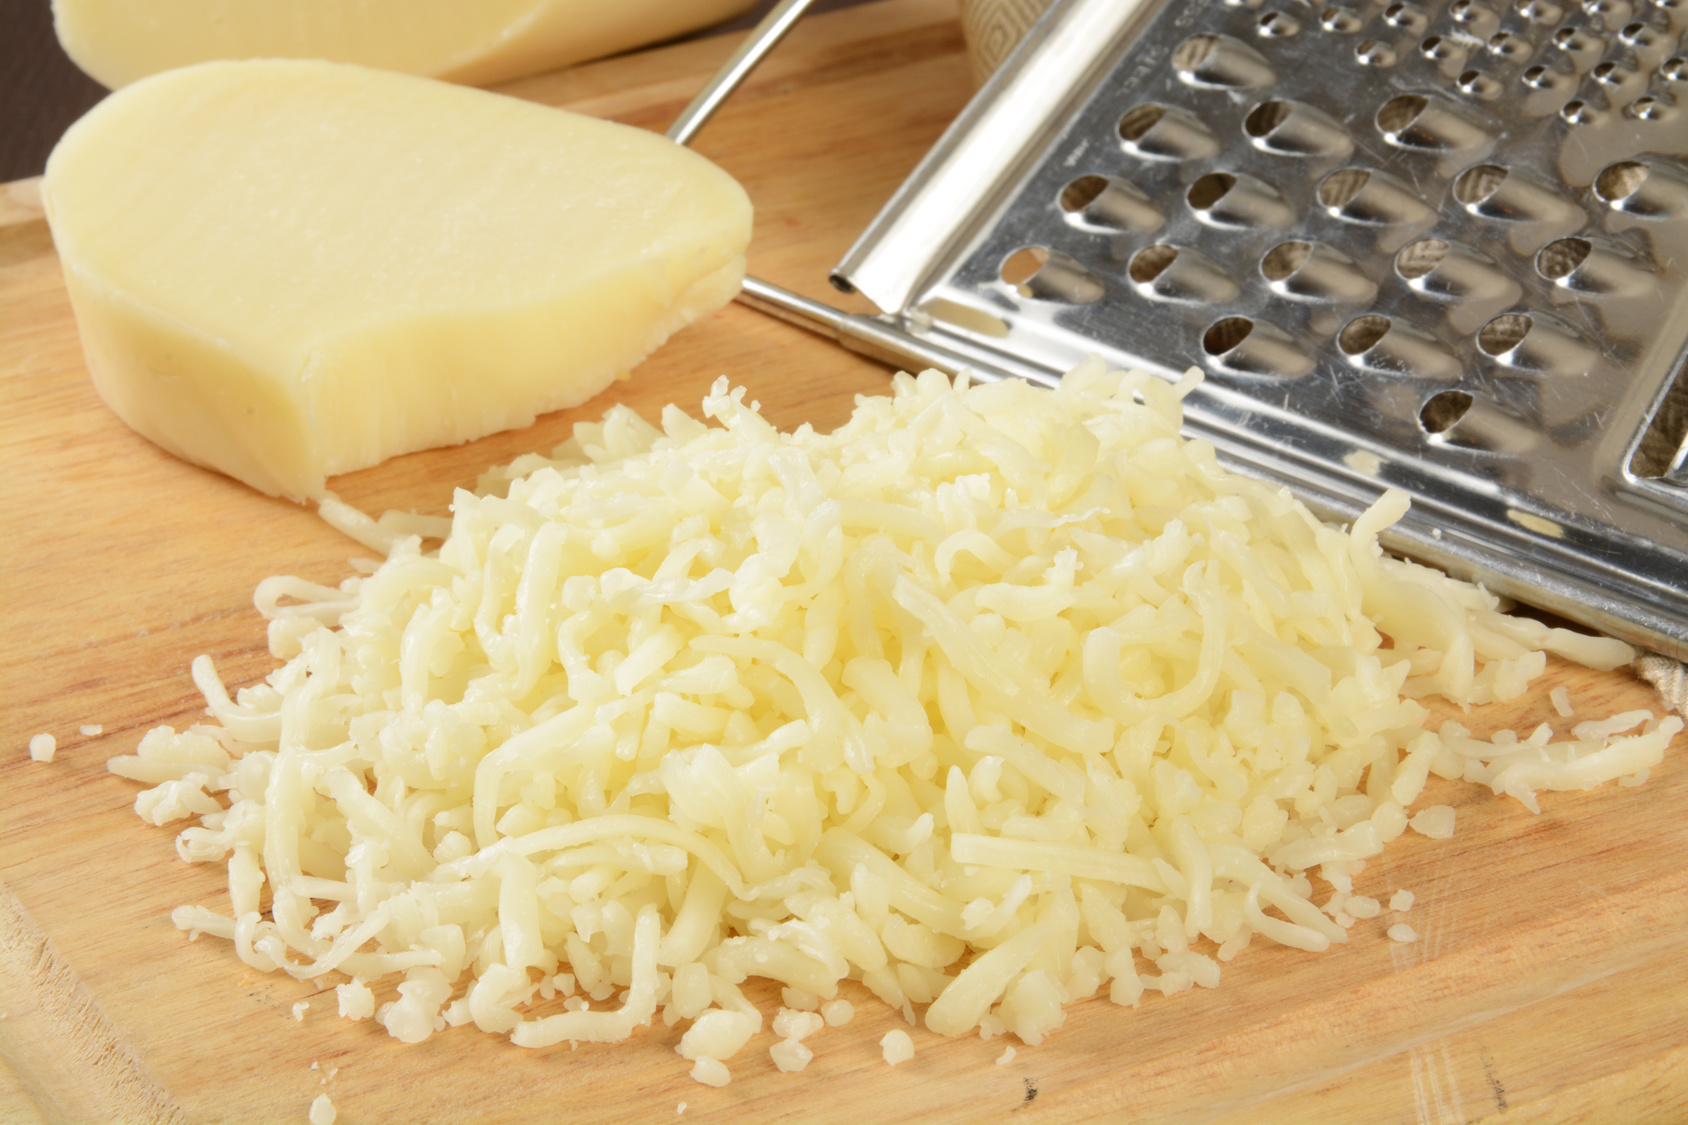 طريقة عمل الجبنة الموزاريلا في المنزل بأبسط الطرق